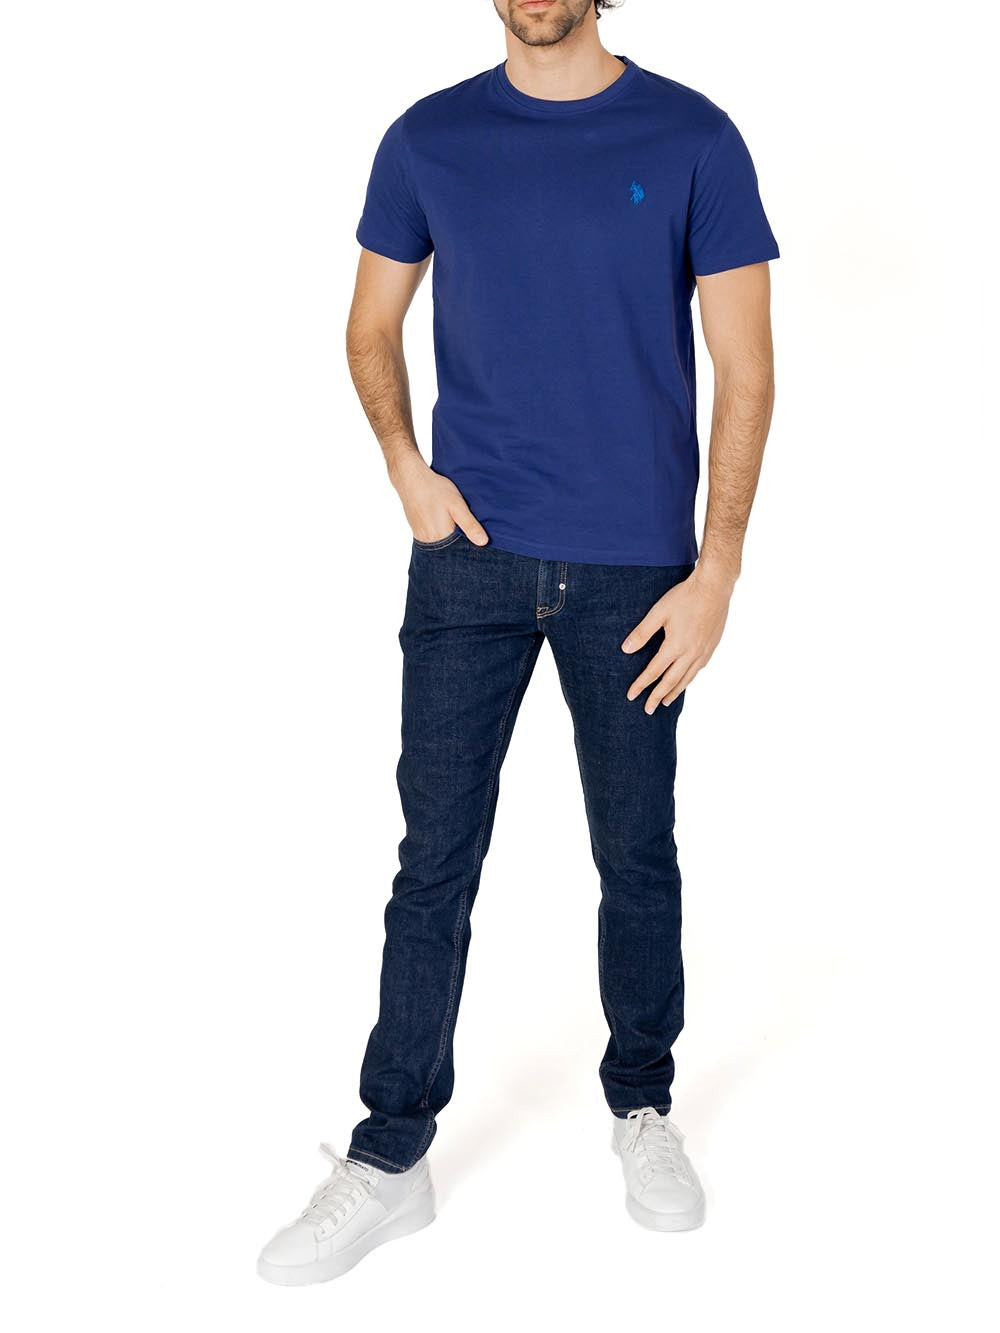 U.S. Polo Assn. T-shirt Uomo Mick 67359 49351 Blu